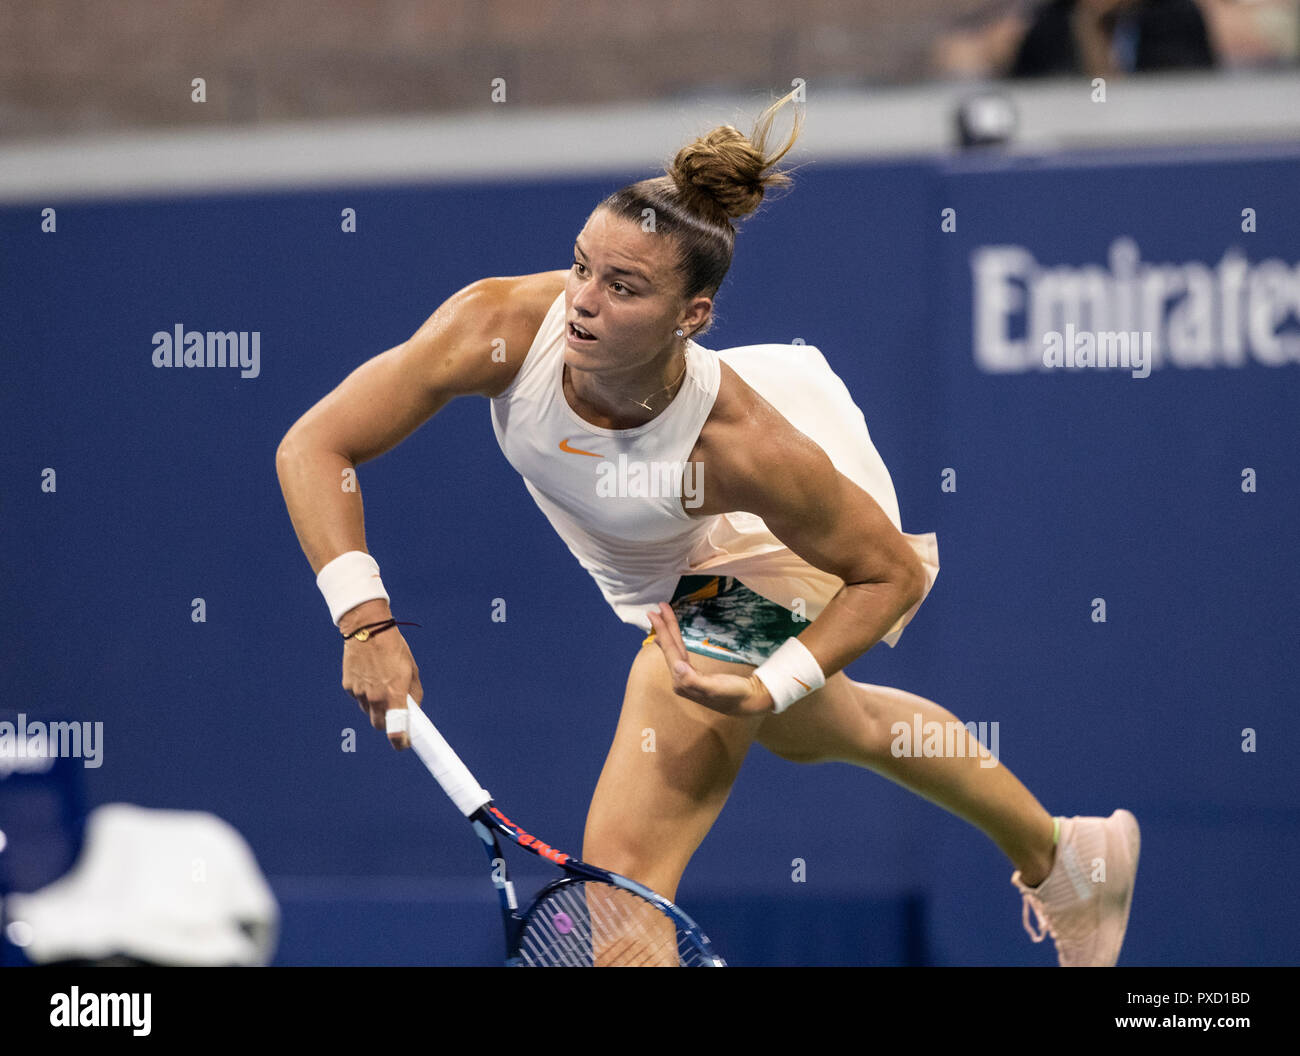 New York, NY - 29. August 2018: Maria Sakkari von Griechenland dient während der US Open 2018 2. runde Spiel gegen Sofia Kenin der USA an USTA Billie Jean King National Tennis Center Stockfoto